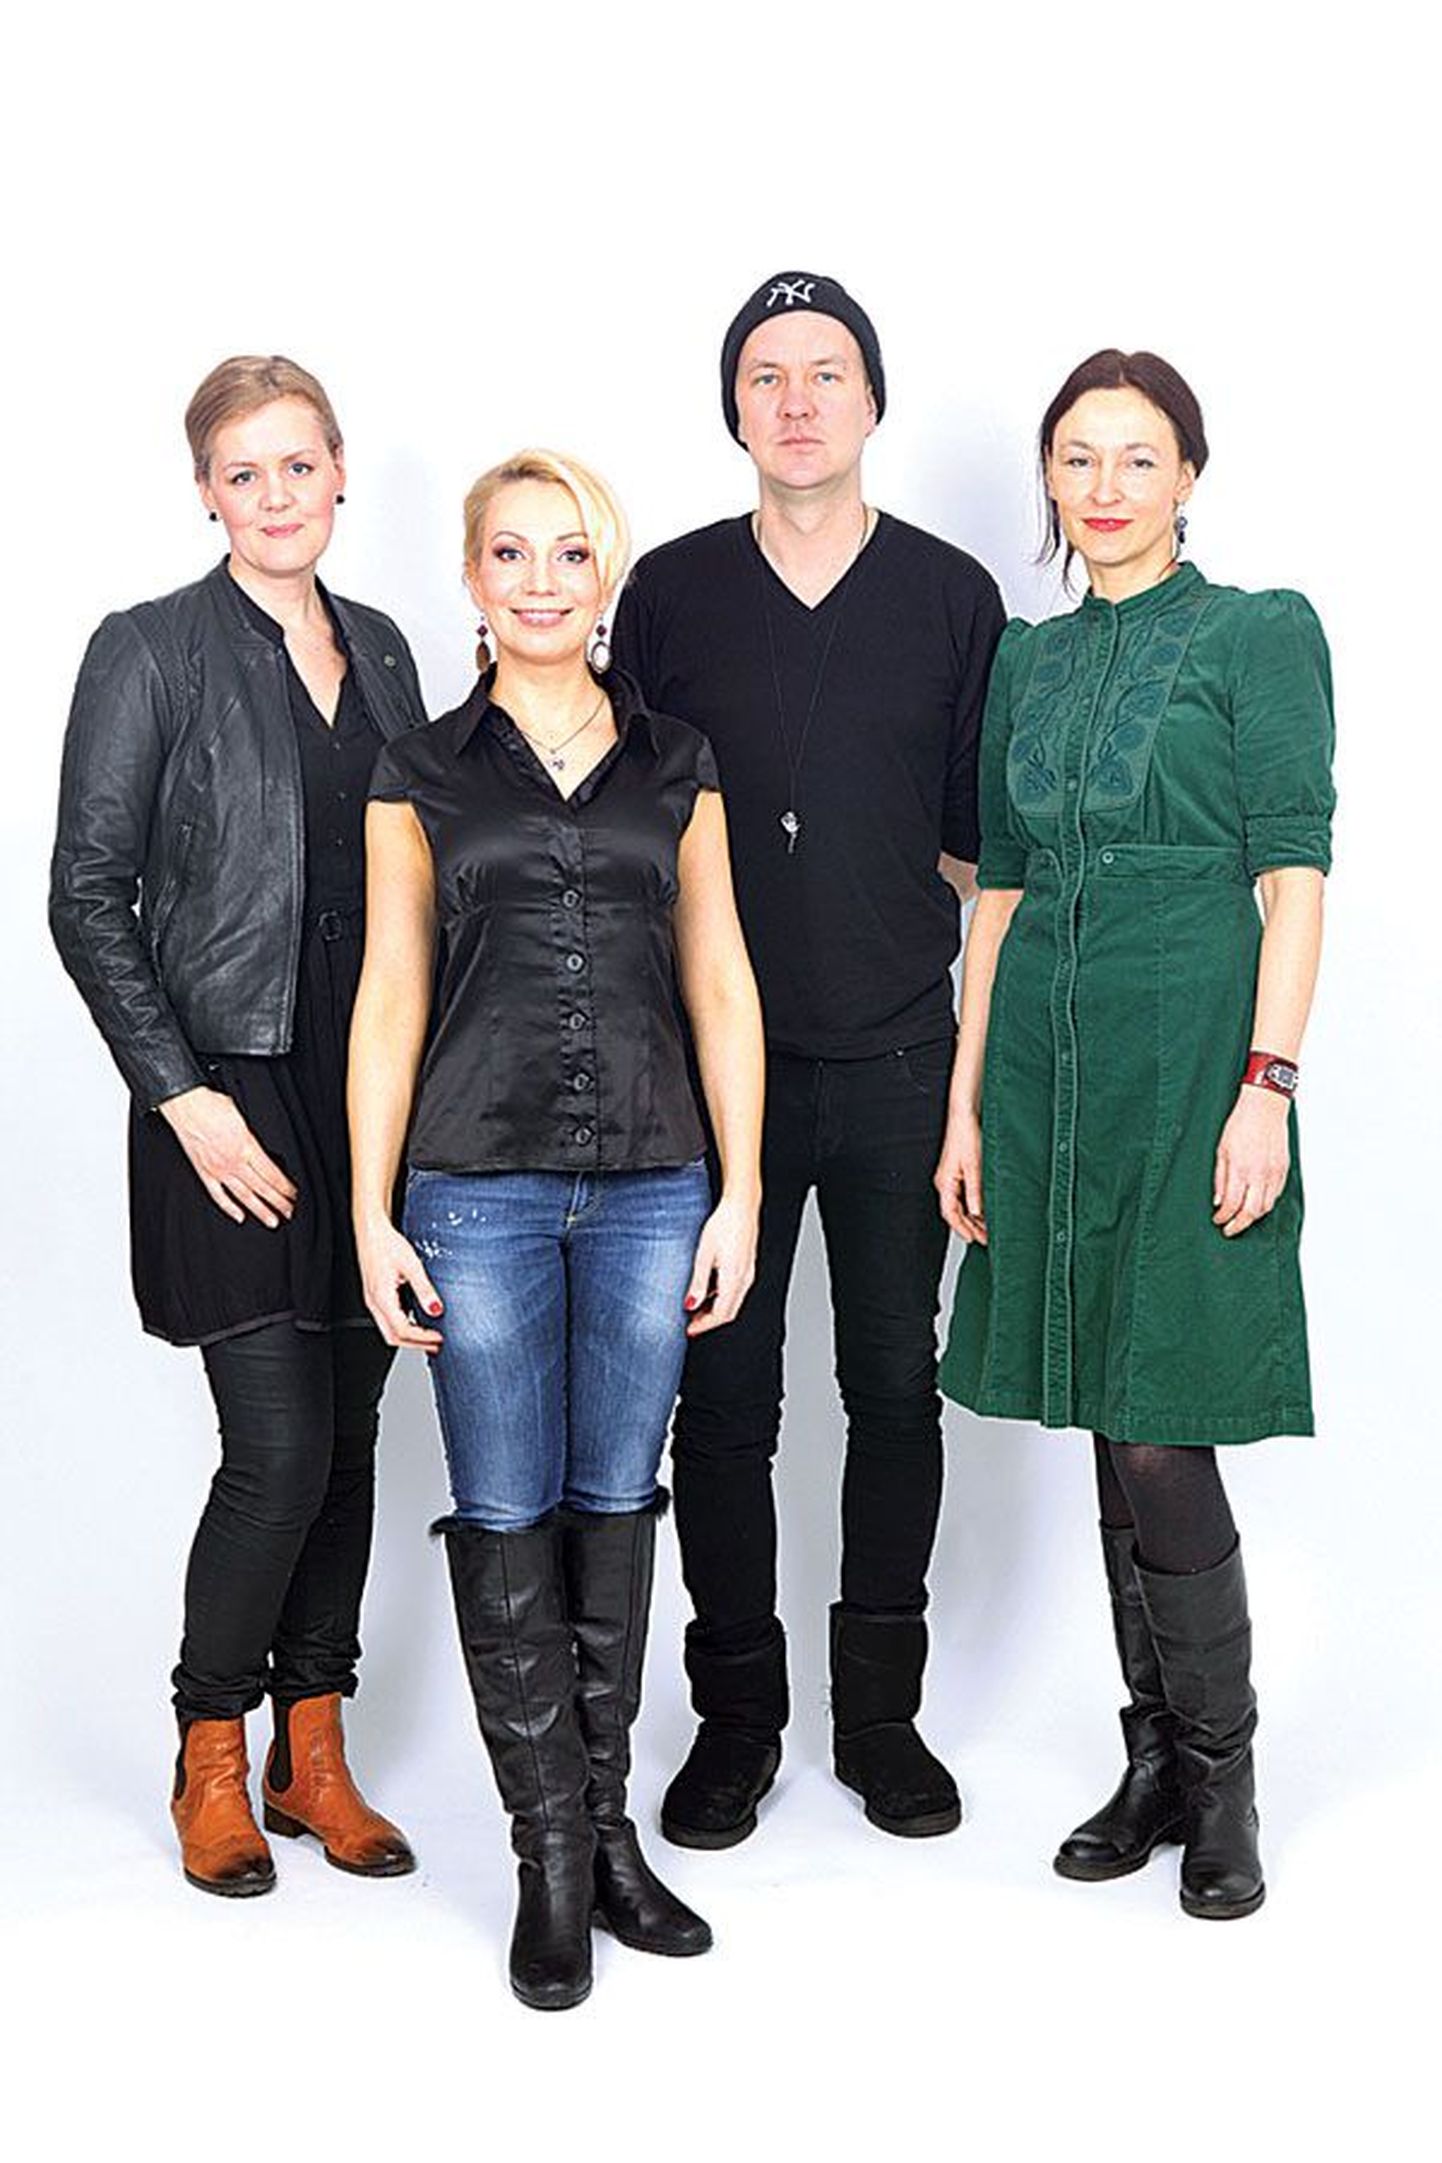 Stilistide meeskond ja modell enne proovimisseansi 
algust: (vasakult) Anu Lensment, Helen Lokuta, Kenneth Bärlin ja Merit Boeijkens.